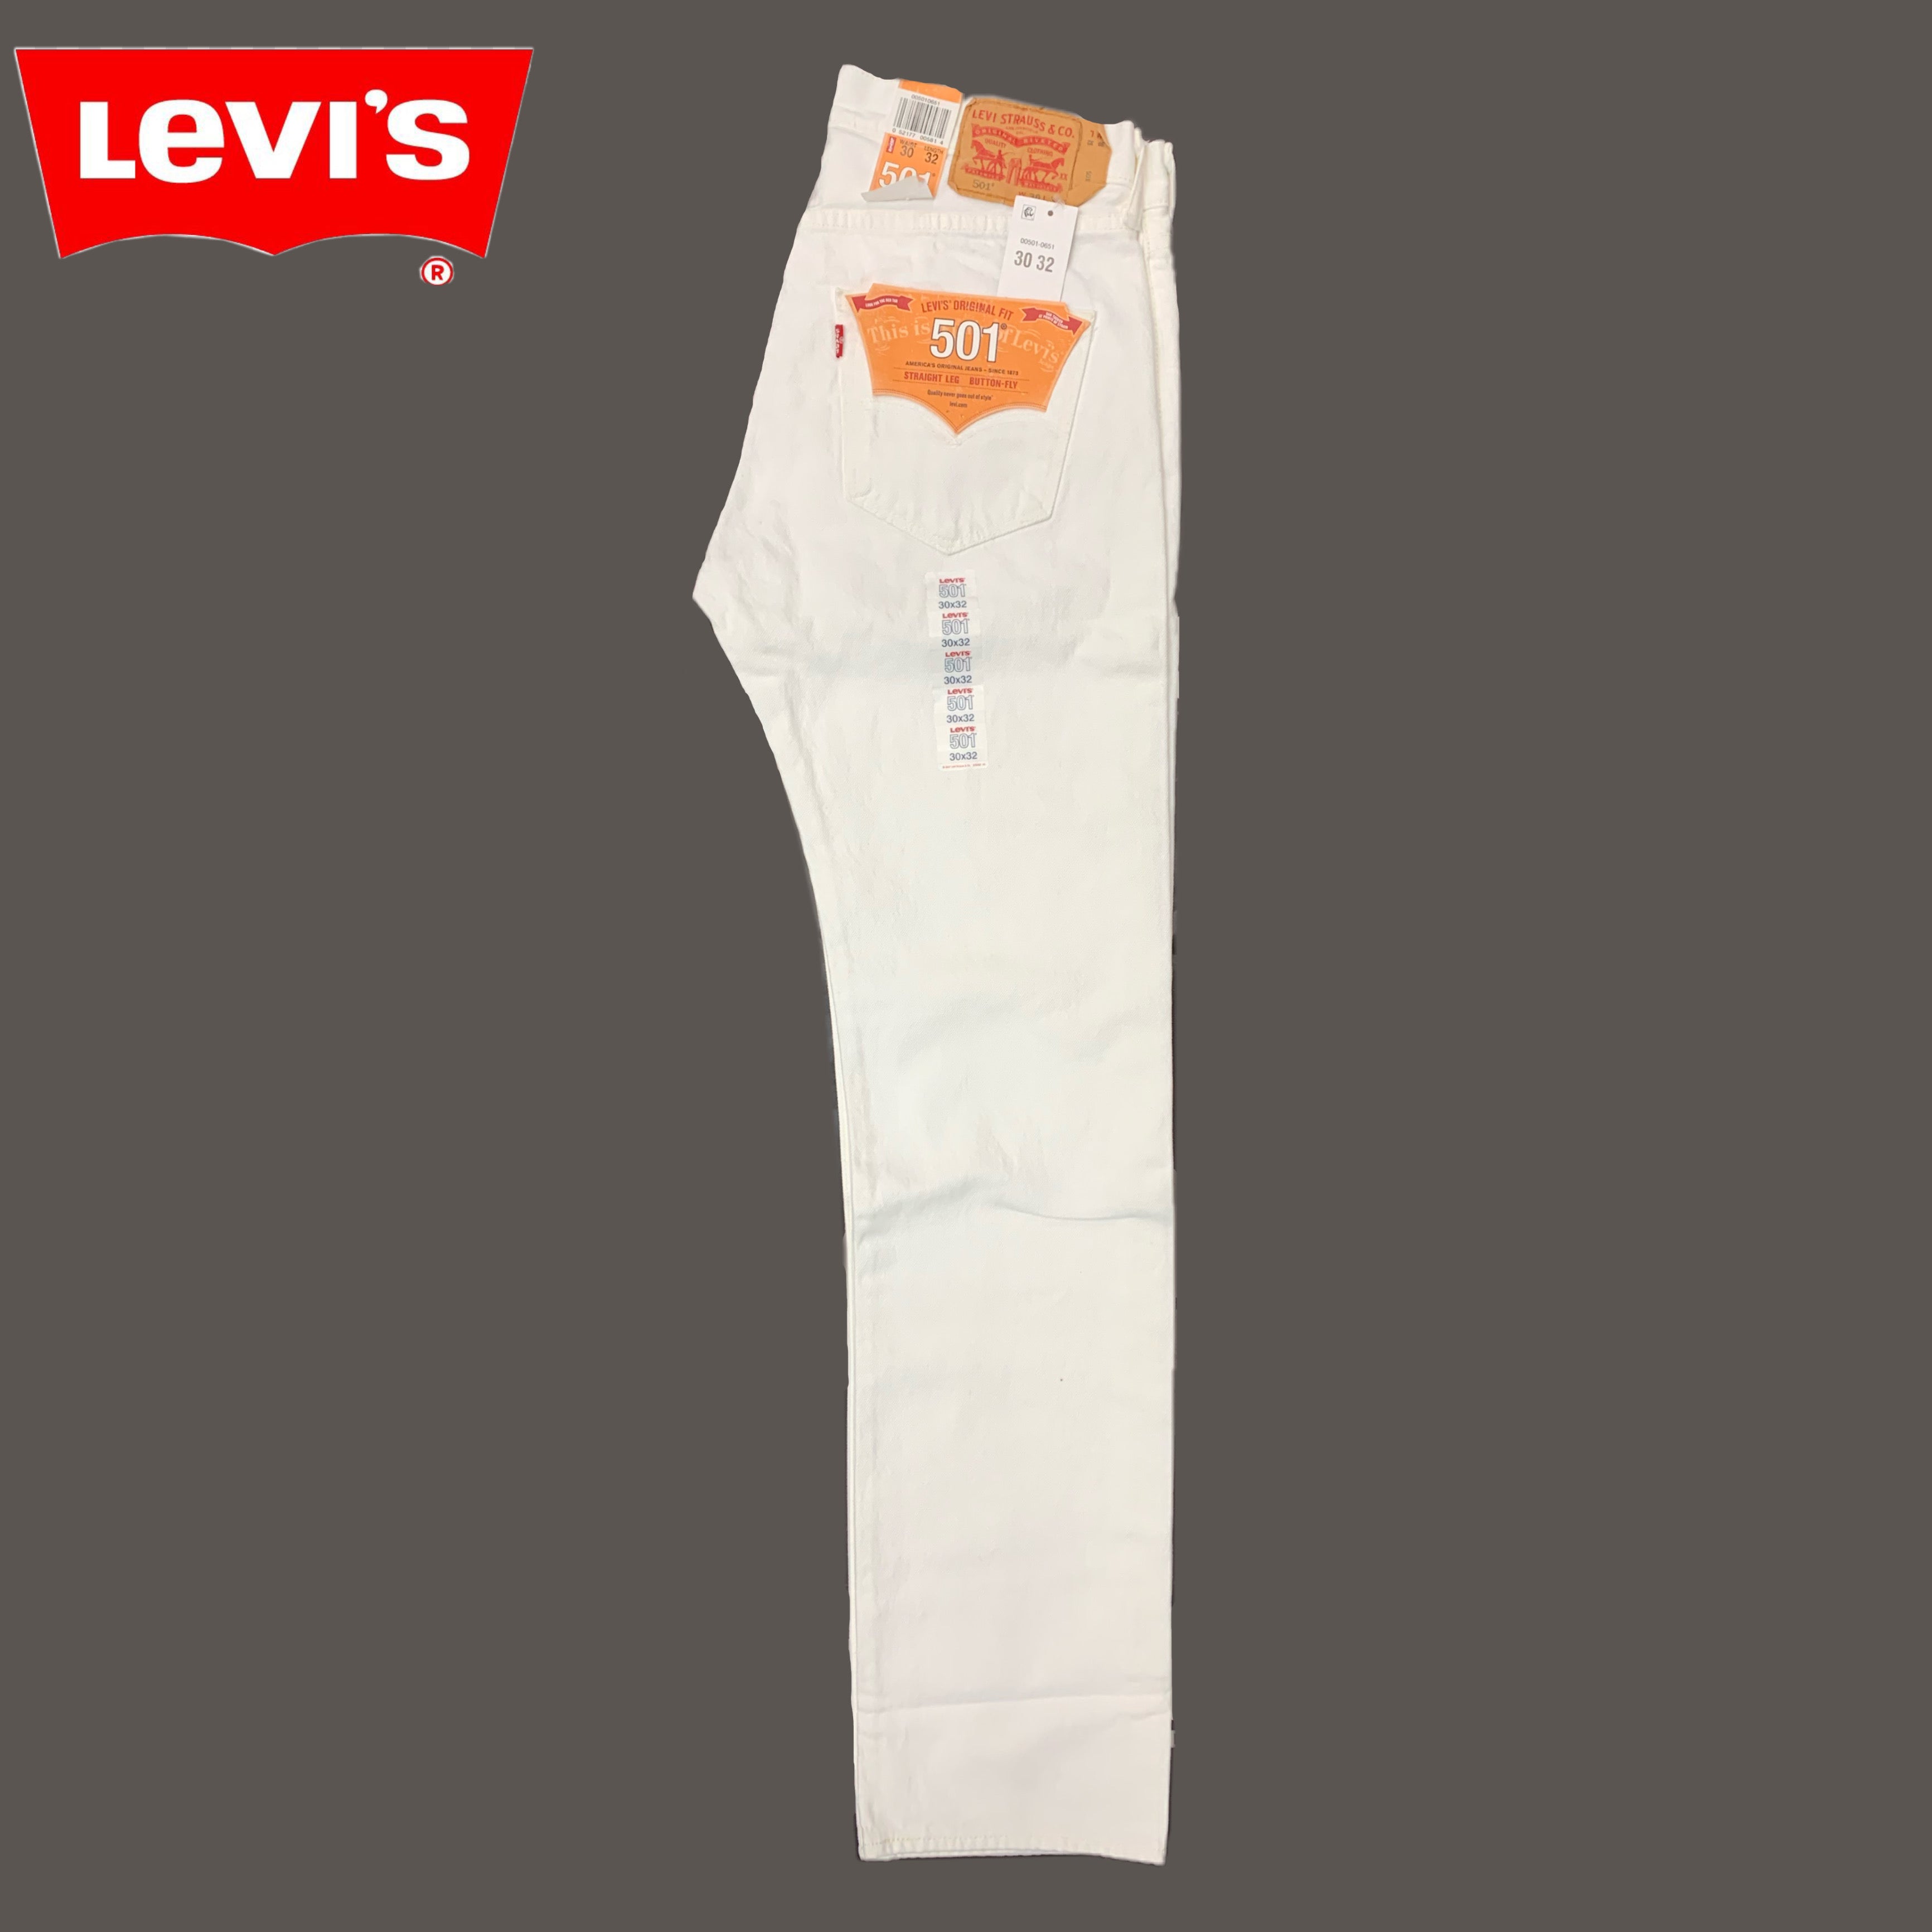 Levi's 501 White